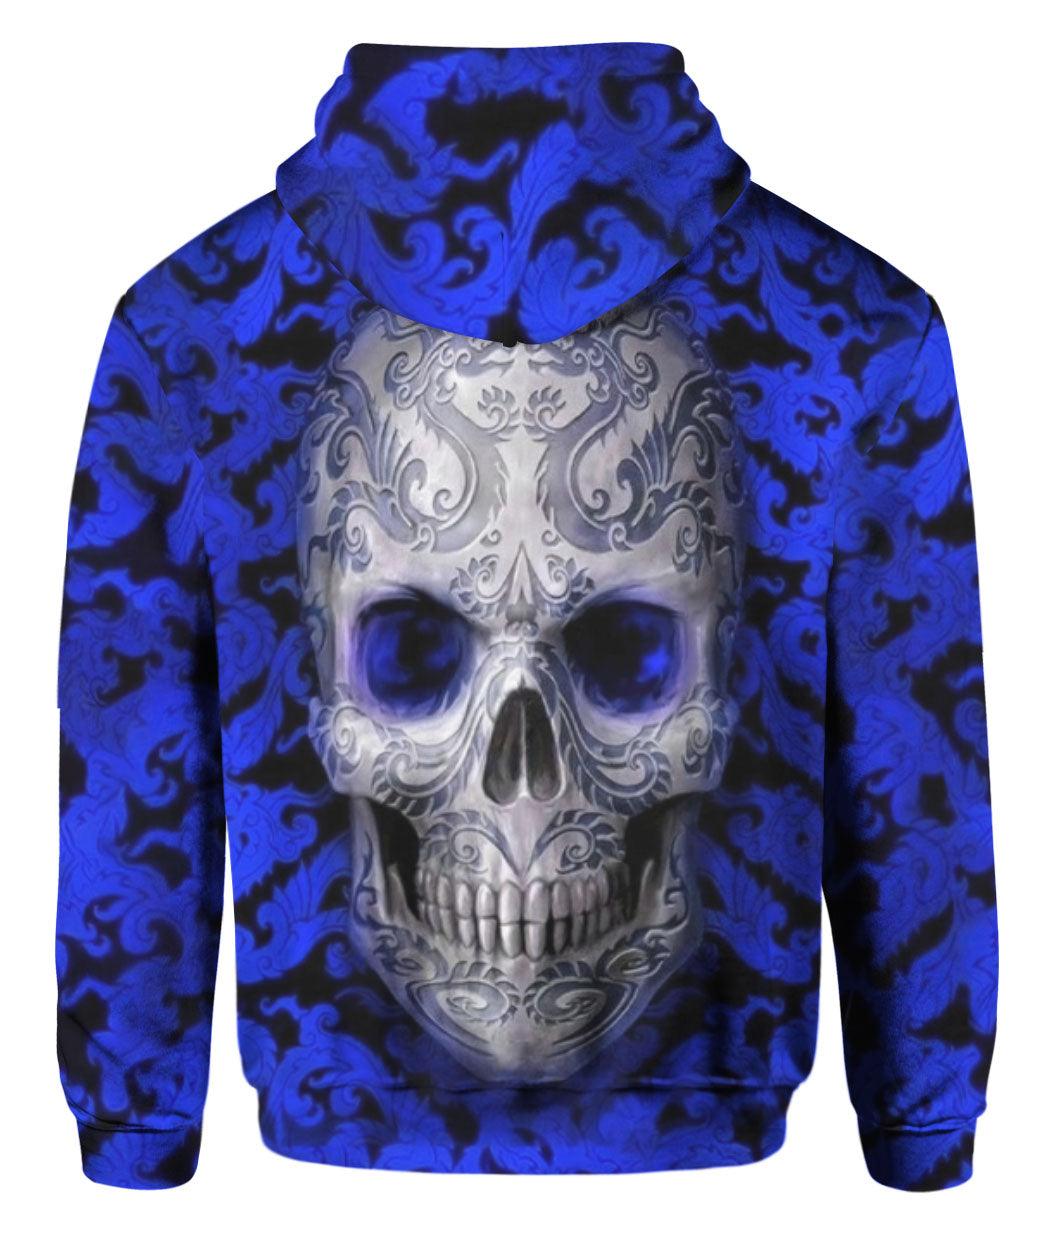 Blue Pattern Skull Hoodie Full Printed - Wonder Skull